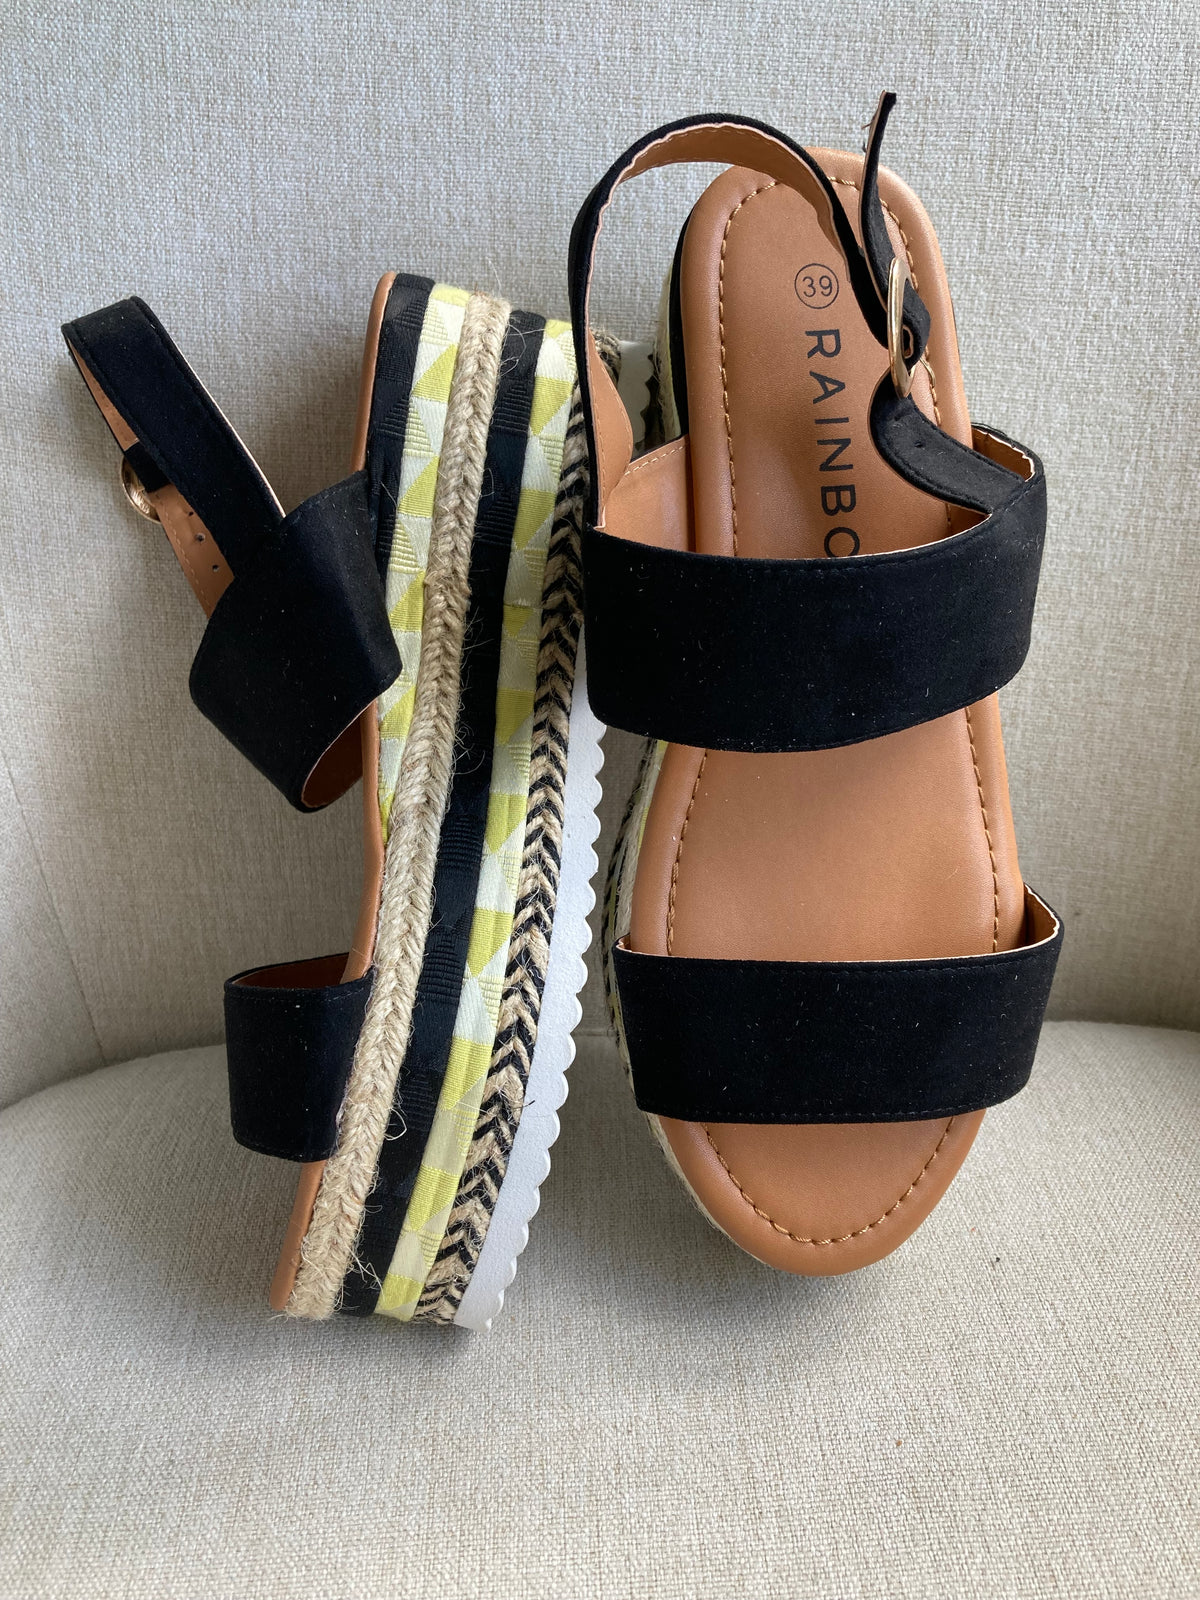 Black detail platform sandals by Bonprix - Size 6